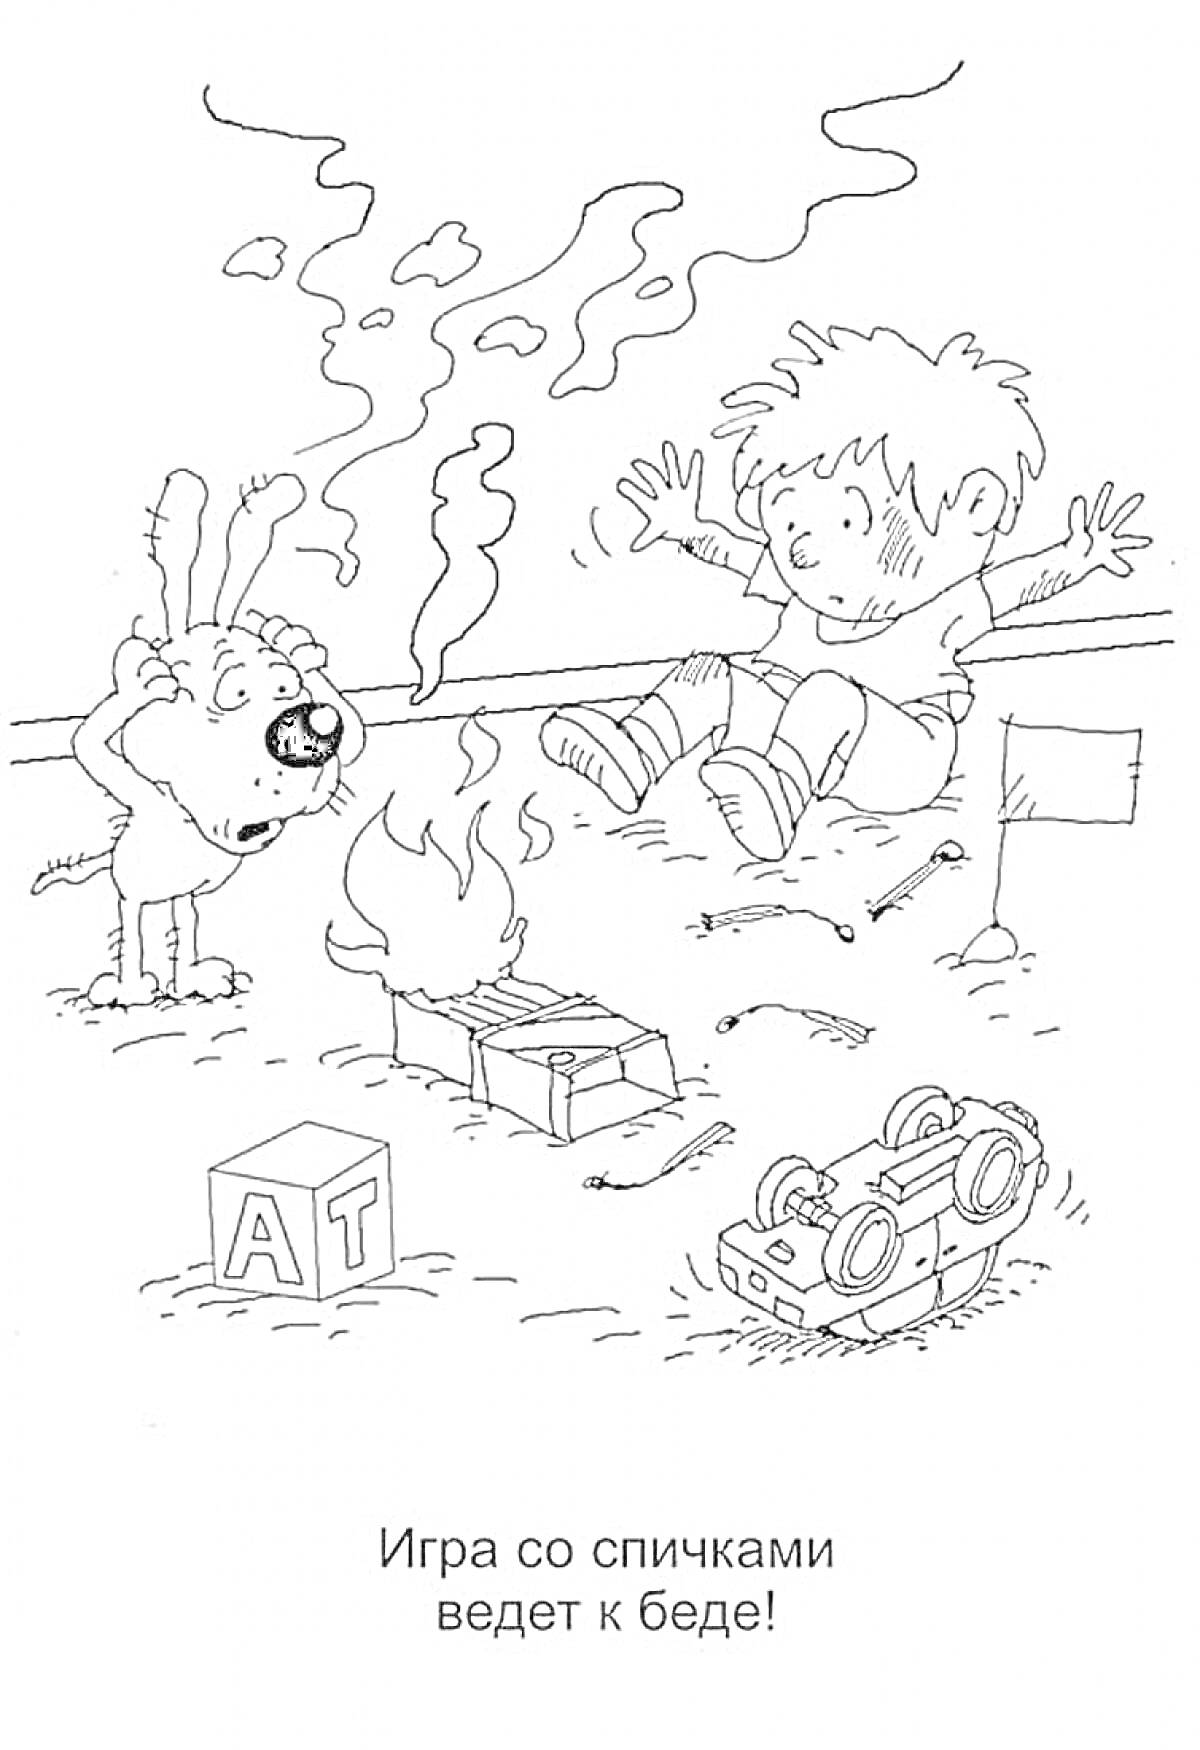 Ребёнок и собака рядом с горящей коробкой спичек, дым, игрушечная машинка, кубики с буквами 